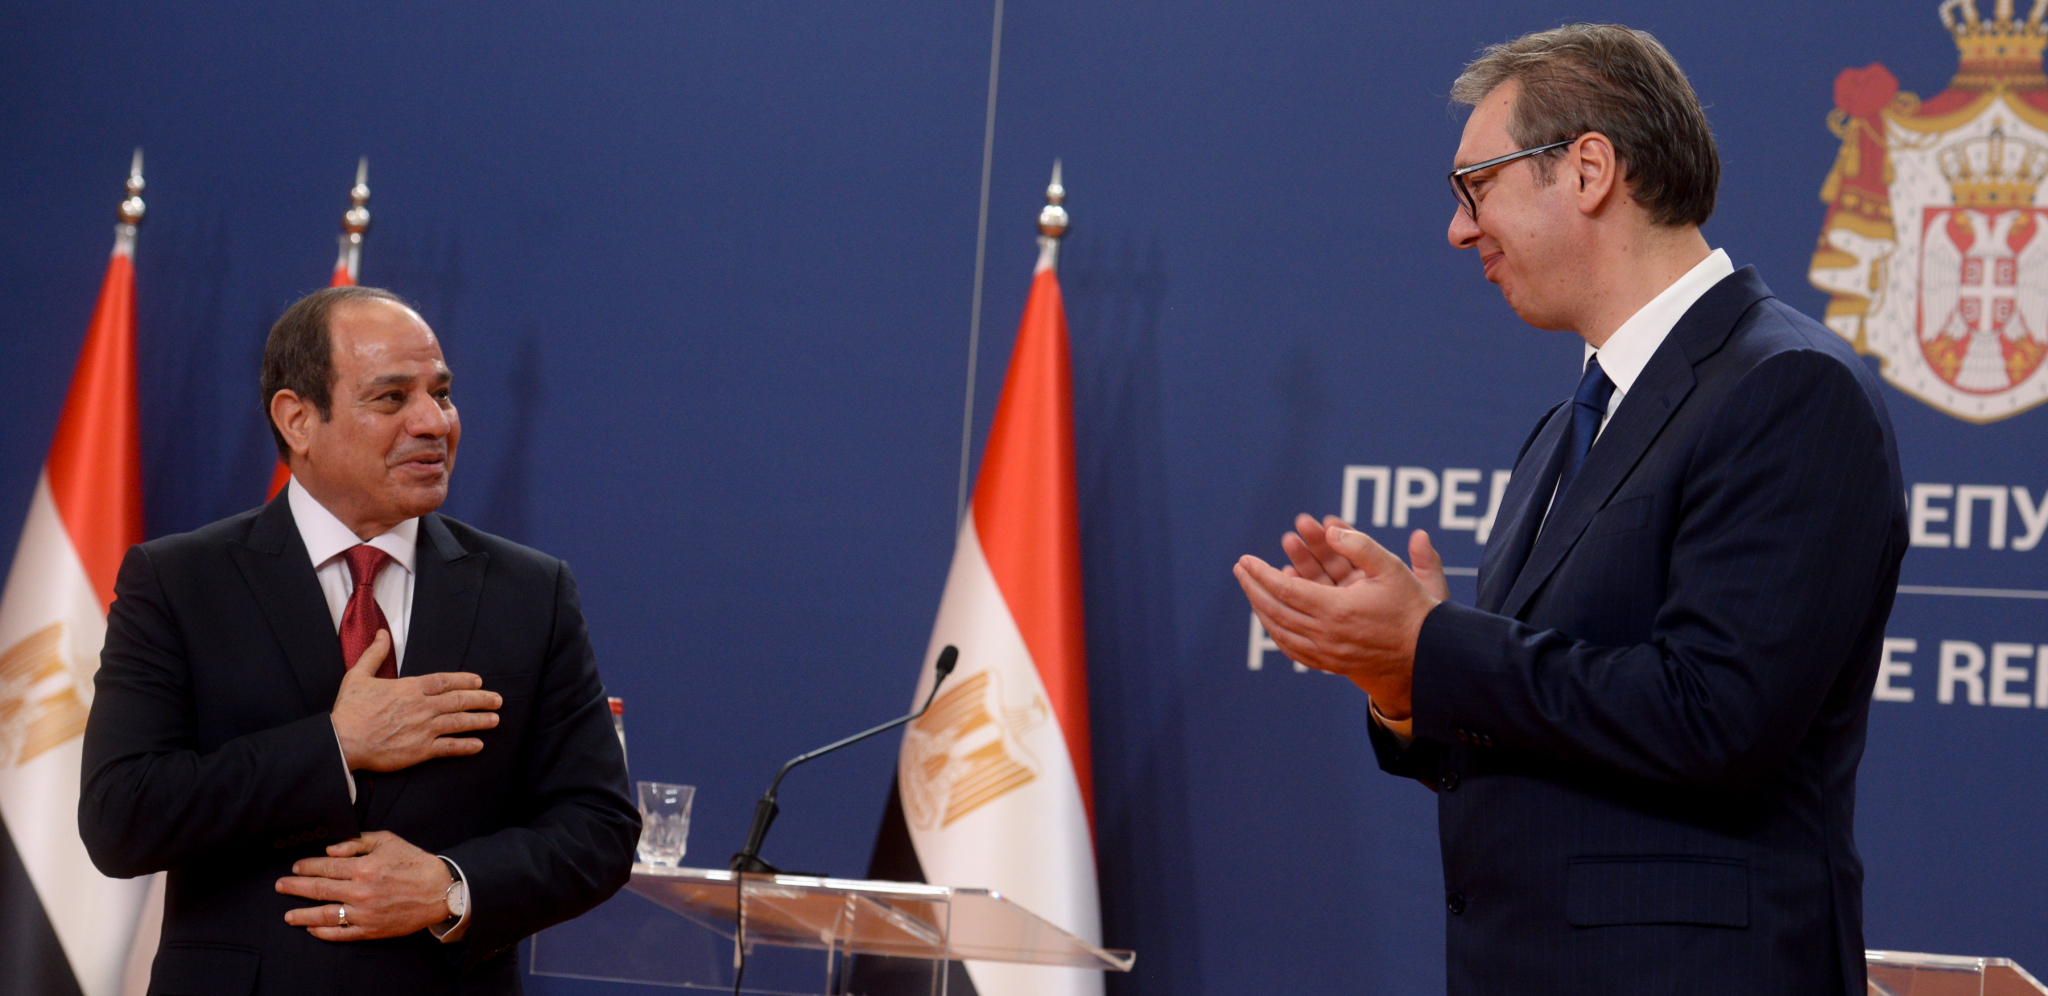 PREDSEDNIK EGIPTA POSETIO SRBIJU Vučić i Al Sisi u prijateljskom razgovoru najavili brojne projekte za Srbiju, potpisani važni memorandumi i deklaracije (FOTO/VIDEO)